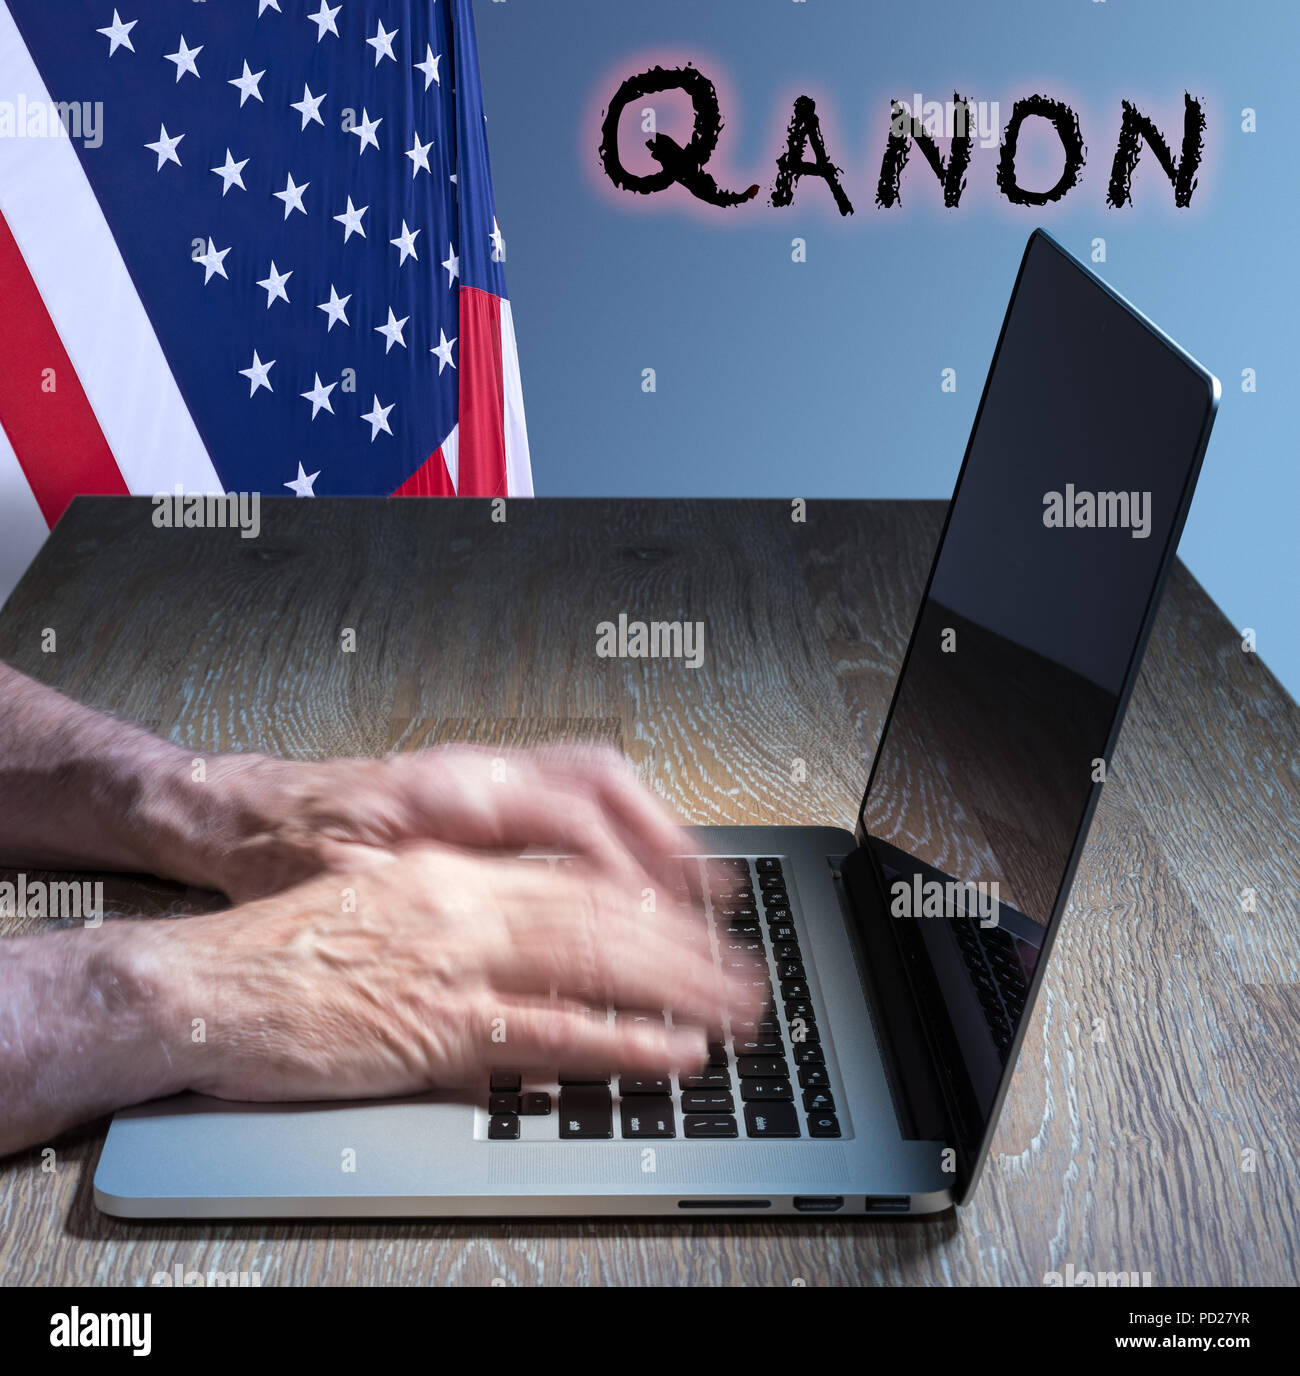 Los altos tipos de hombre caucásico acerca de Q Anon profundo estado de conspiración Foto de stock